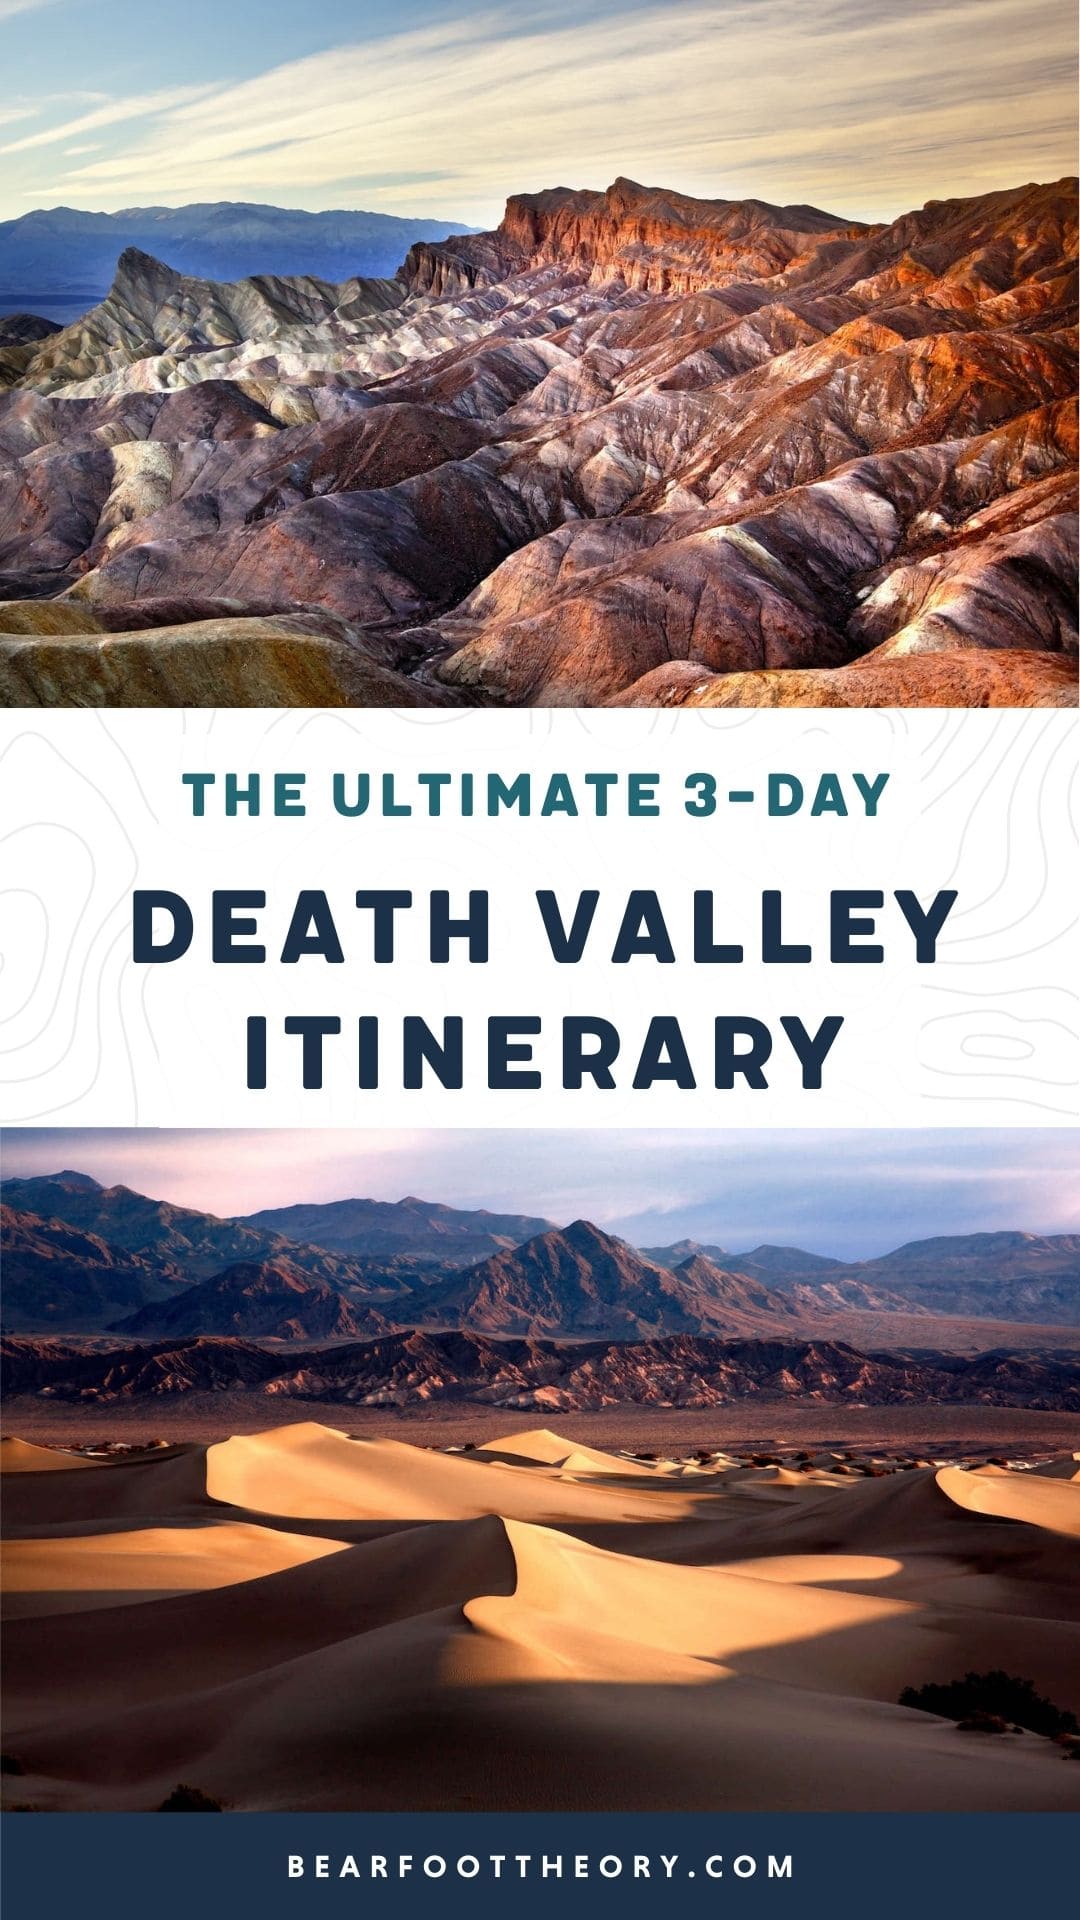 沙丘，火山口，峡谷和野花。通过这3天的死亡谷国家公园行程，体验死亡谷的最佳景点。